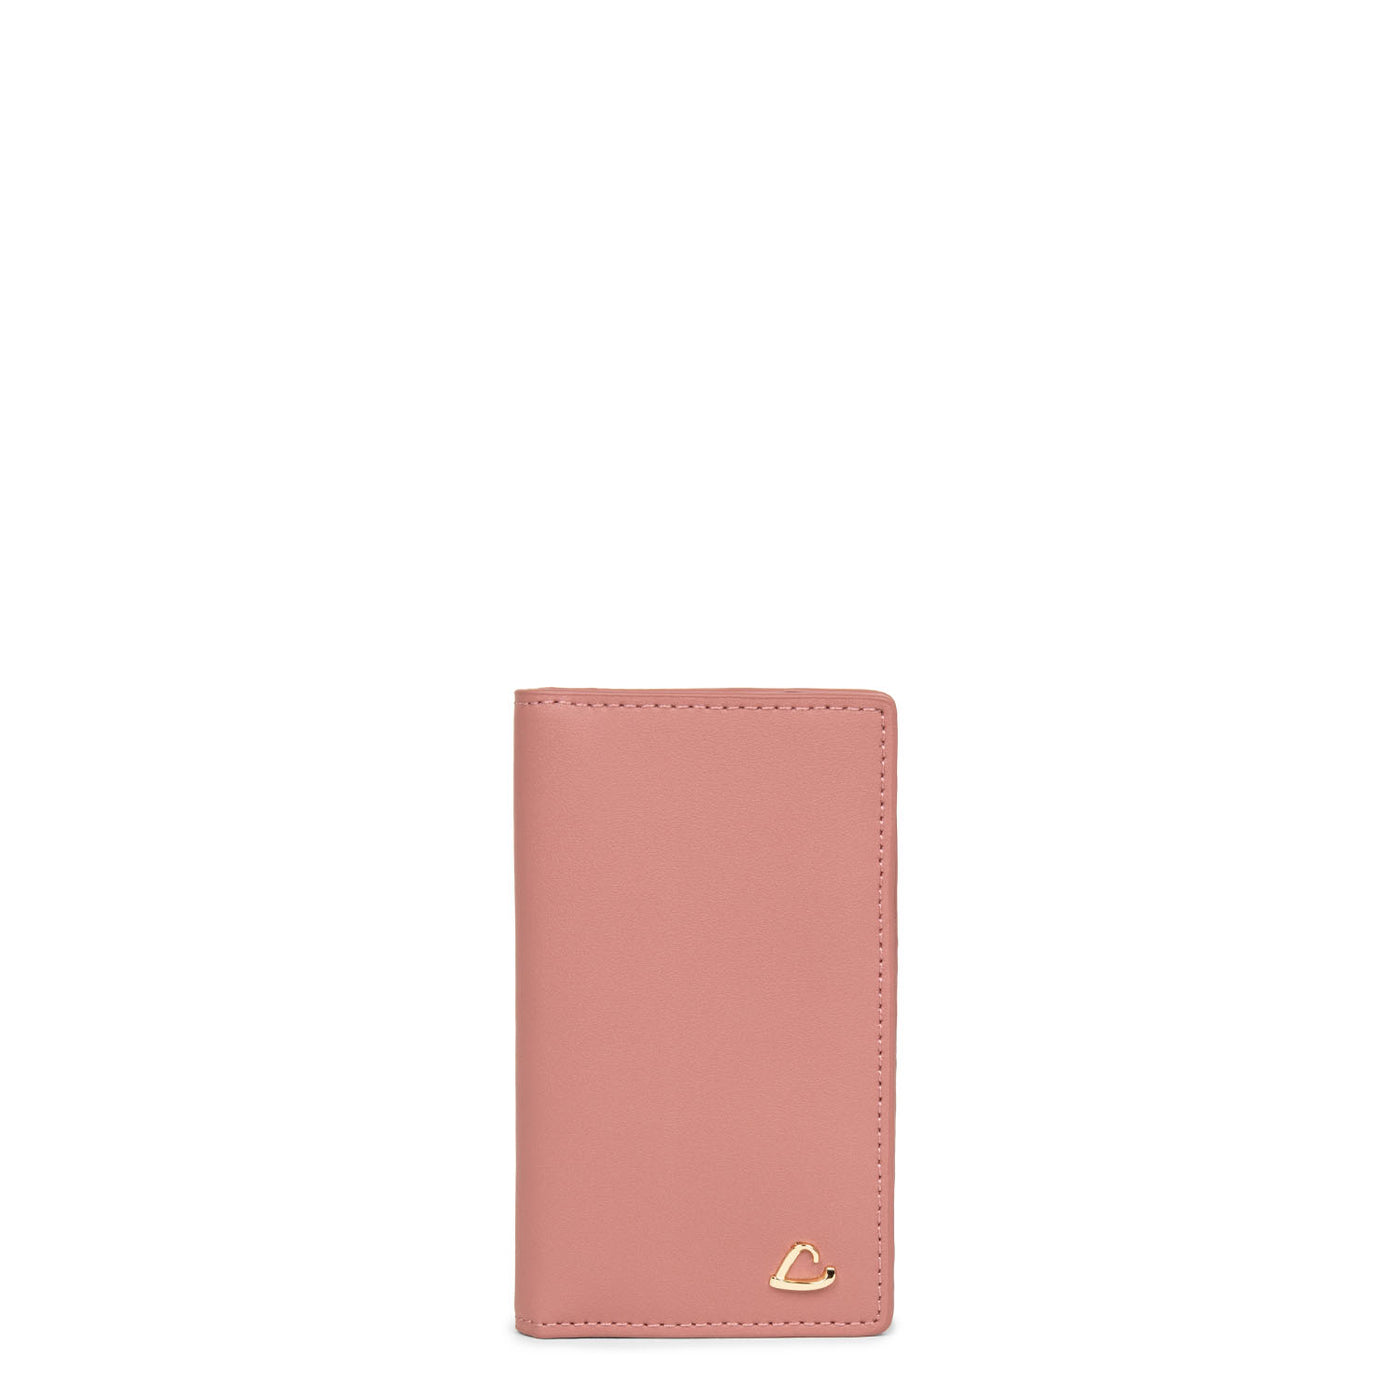 porte-cartes - city philos #couleur_rose-cendre